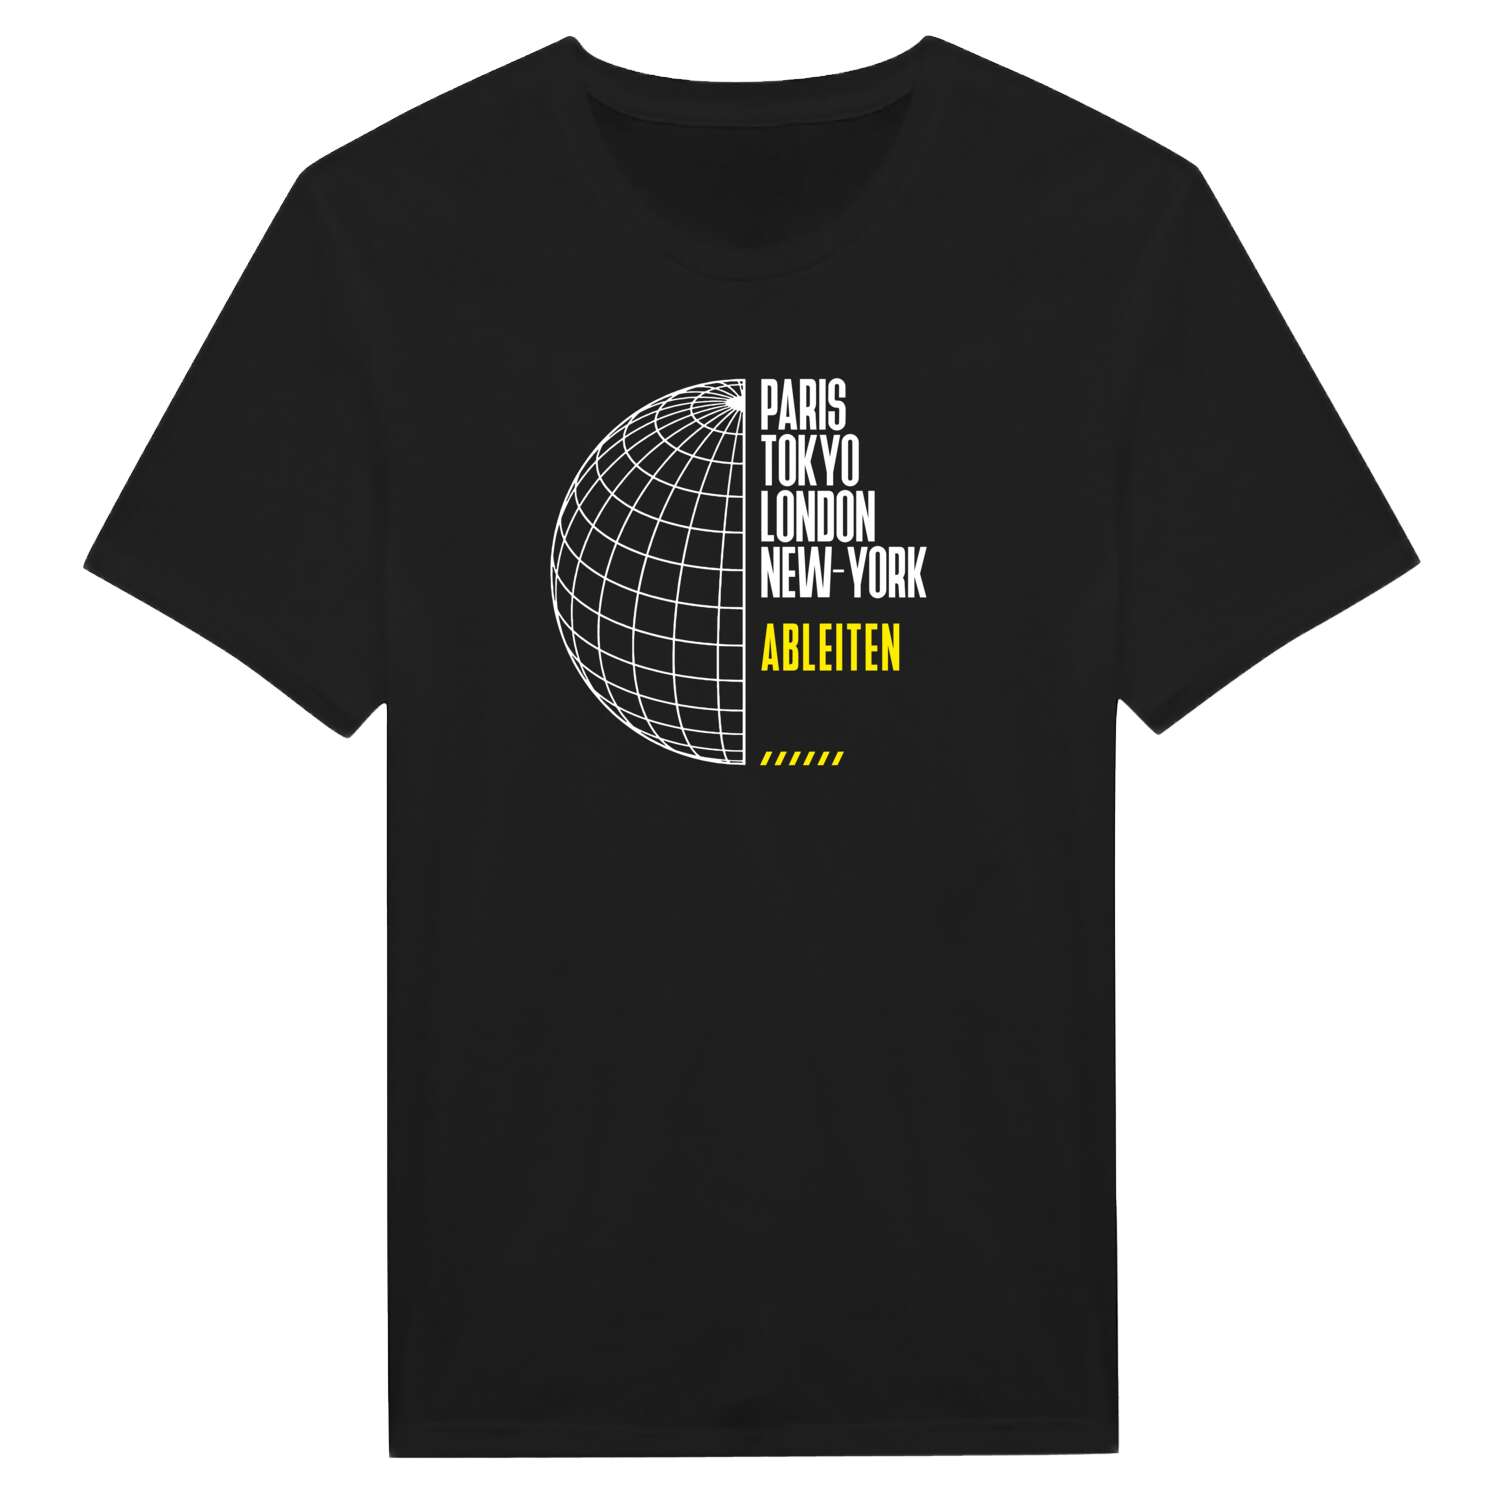 Ableiten T-Shirt »Paris Tokyo London«